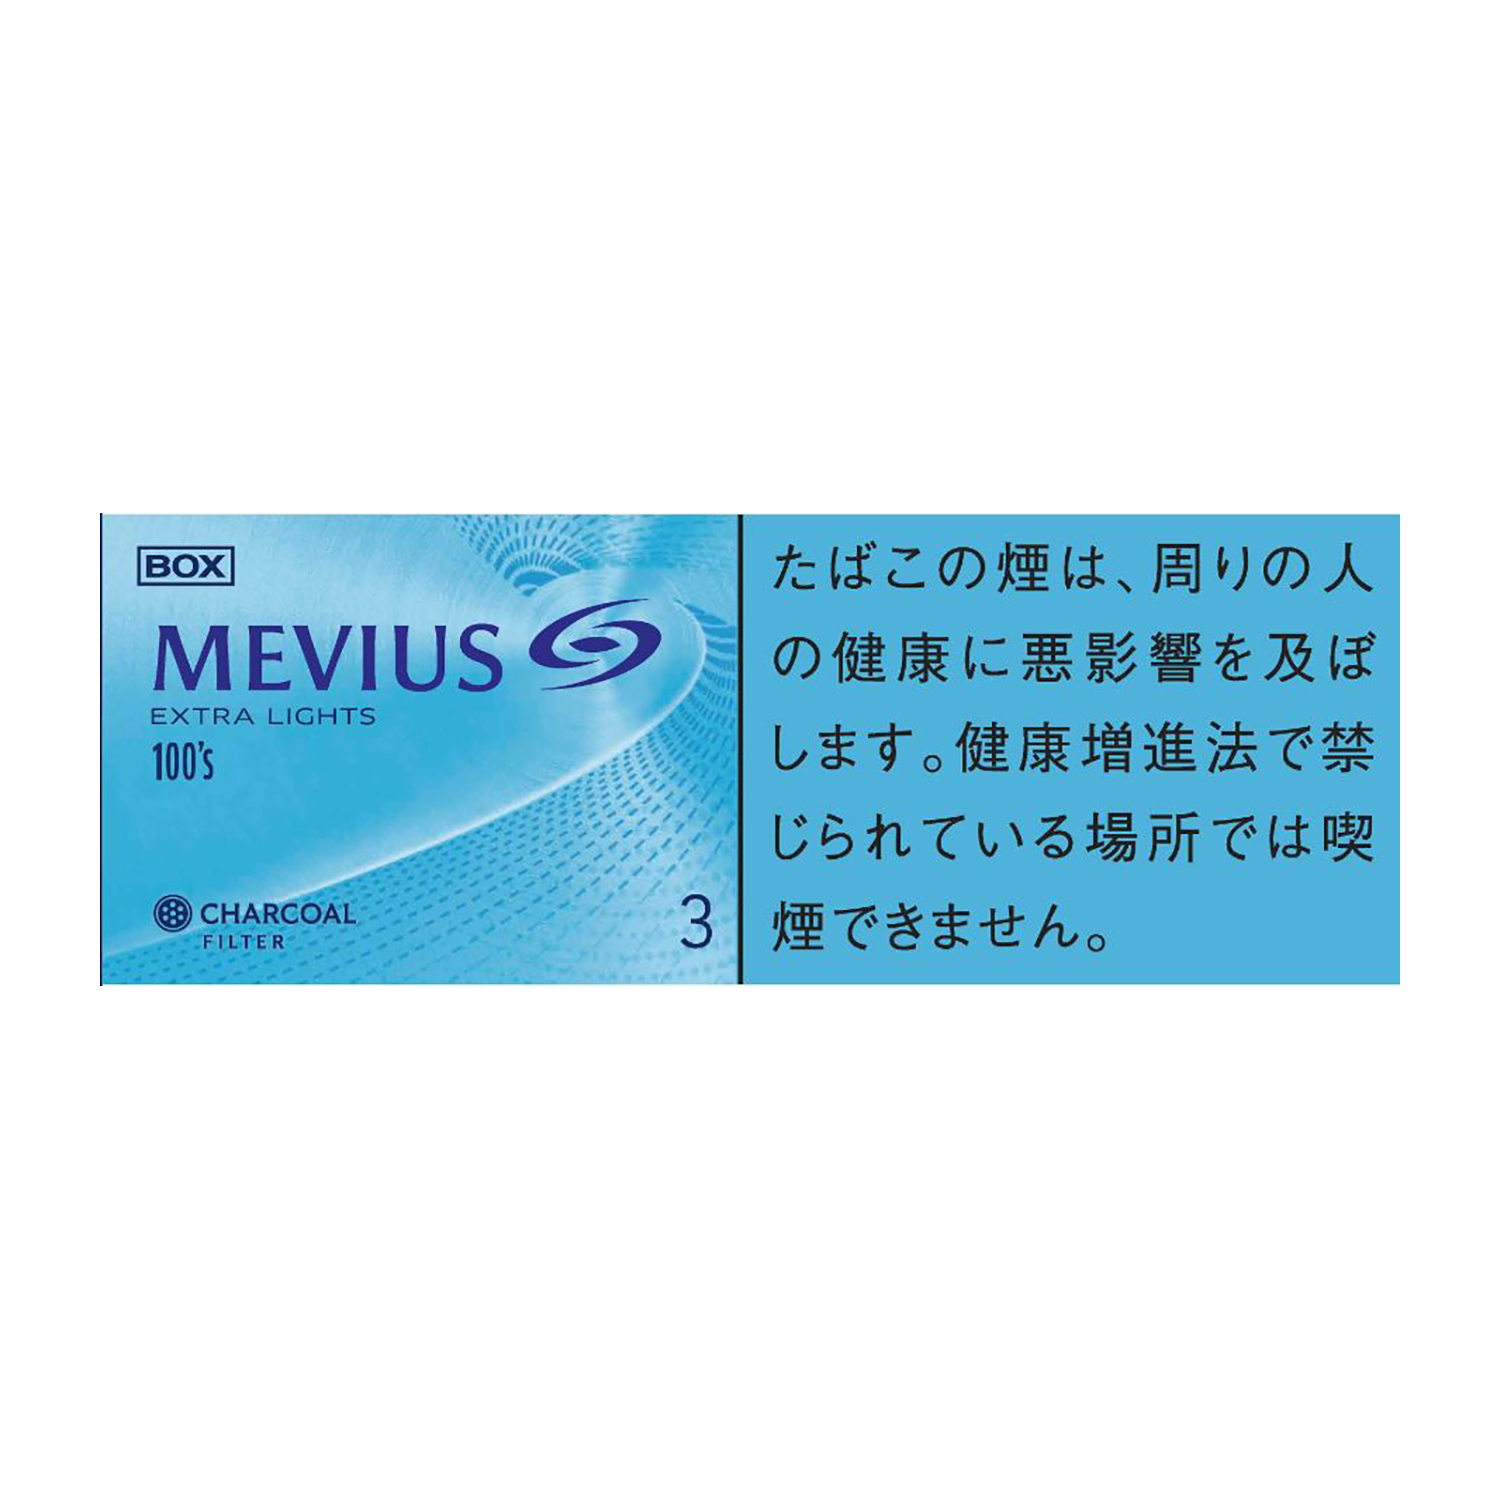 MEVIUS EXTRA LIGHTS 100's BOX / Tar:3mg Nicotine:0.3mg